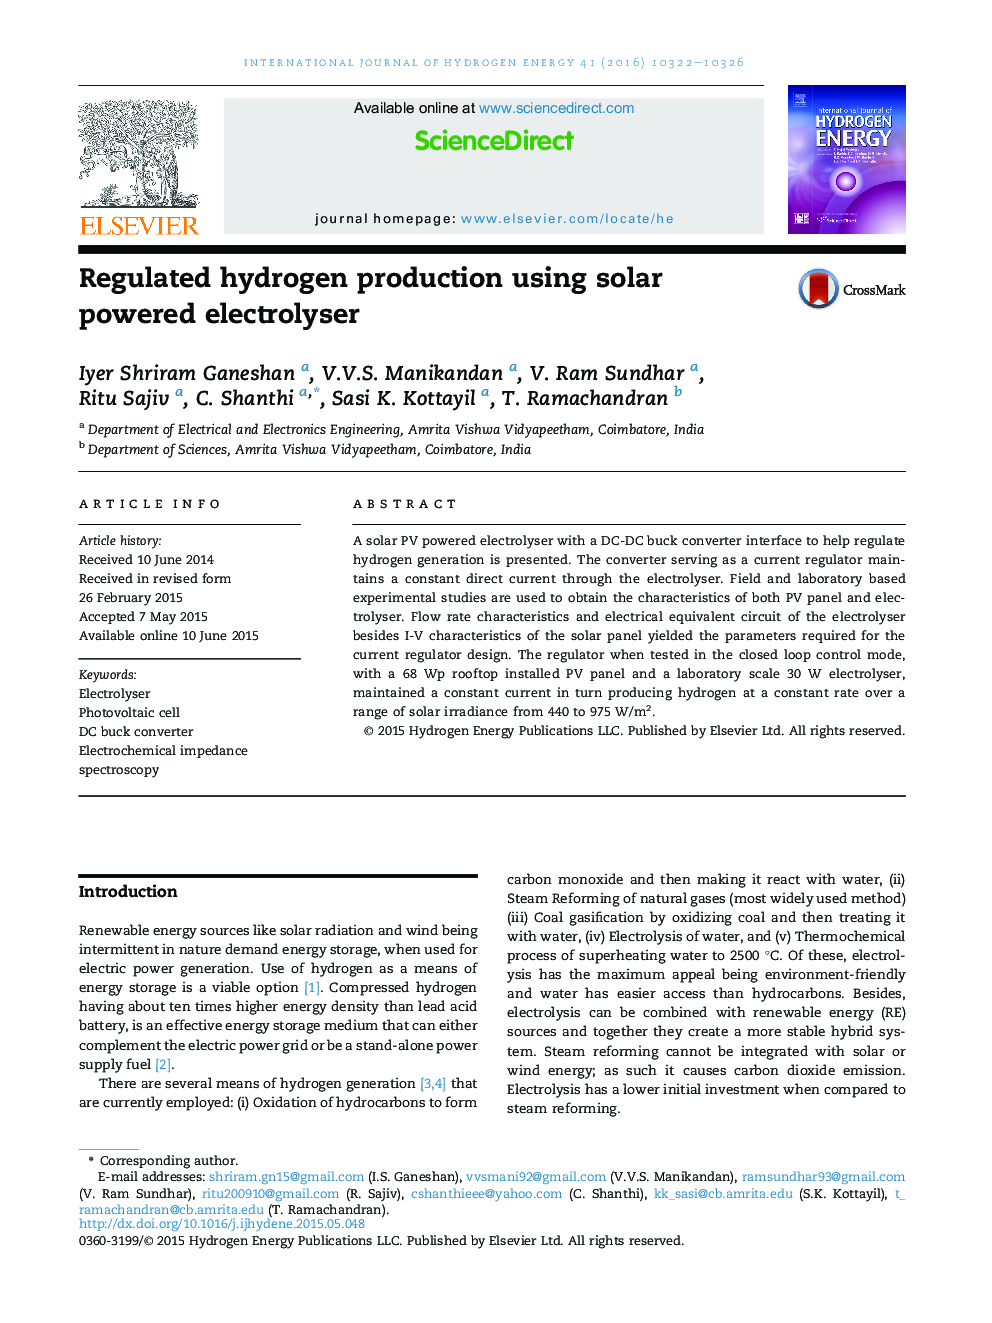 تولید هیدروژن تنظیم شده با استفاده از electrolyser خورشیدی